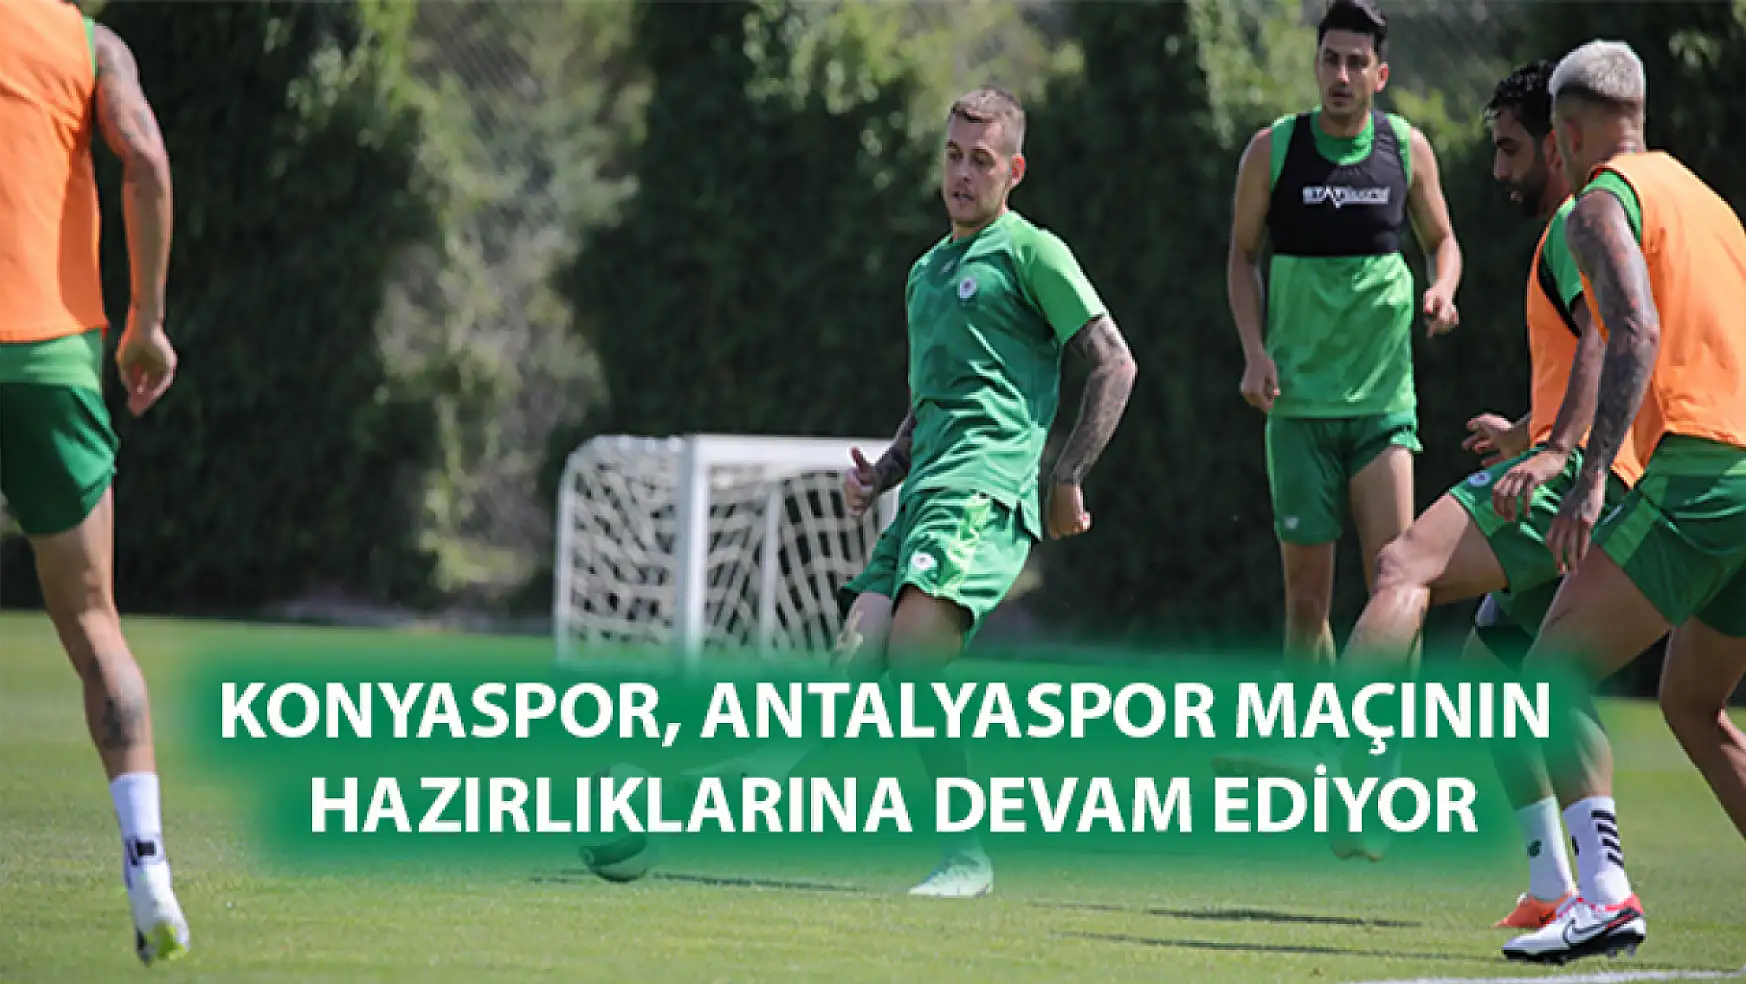 Konyaspor, Antalyaspor maçının hazırlıklarına devam ediyor